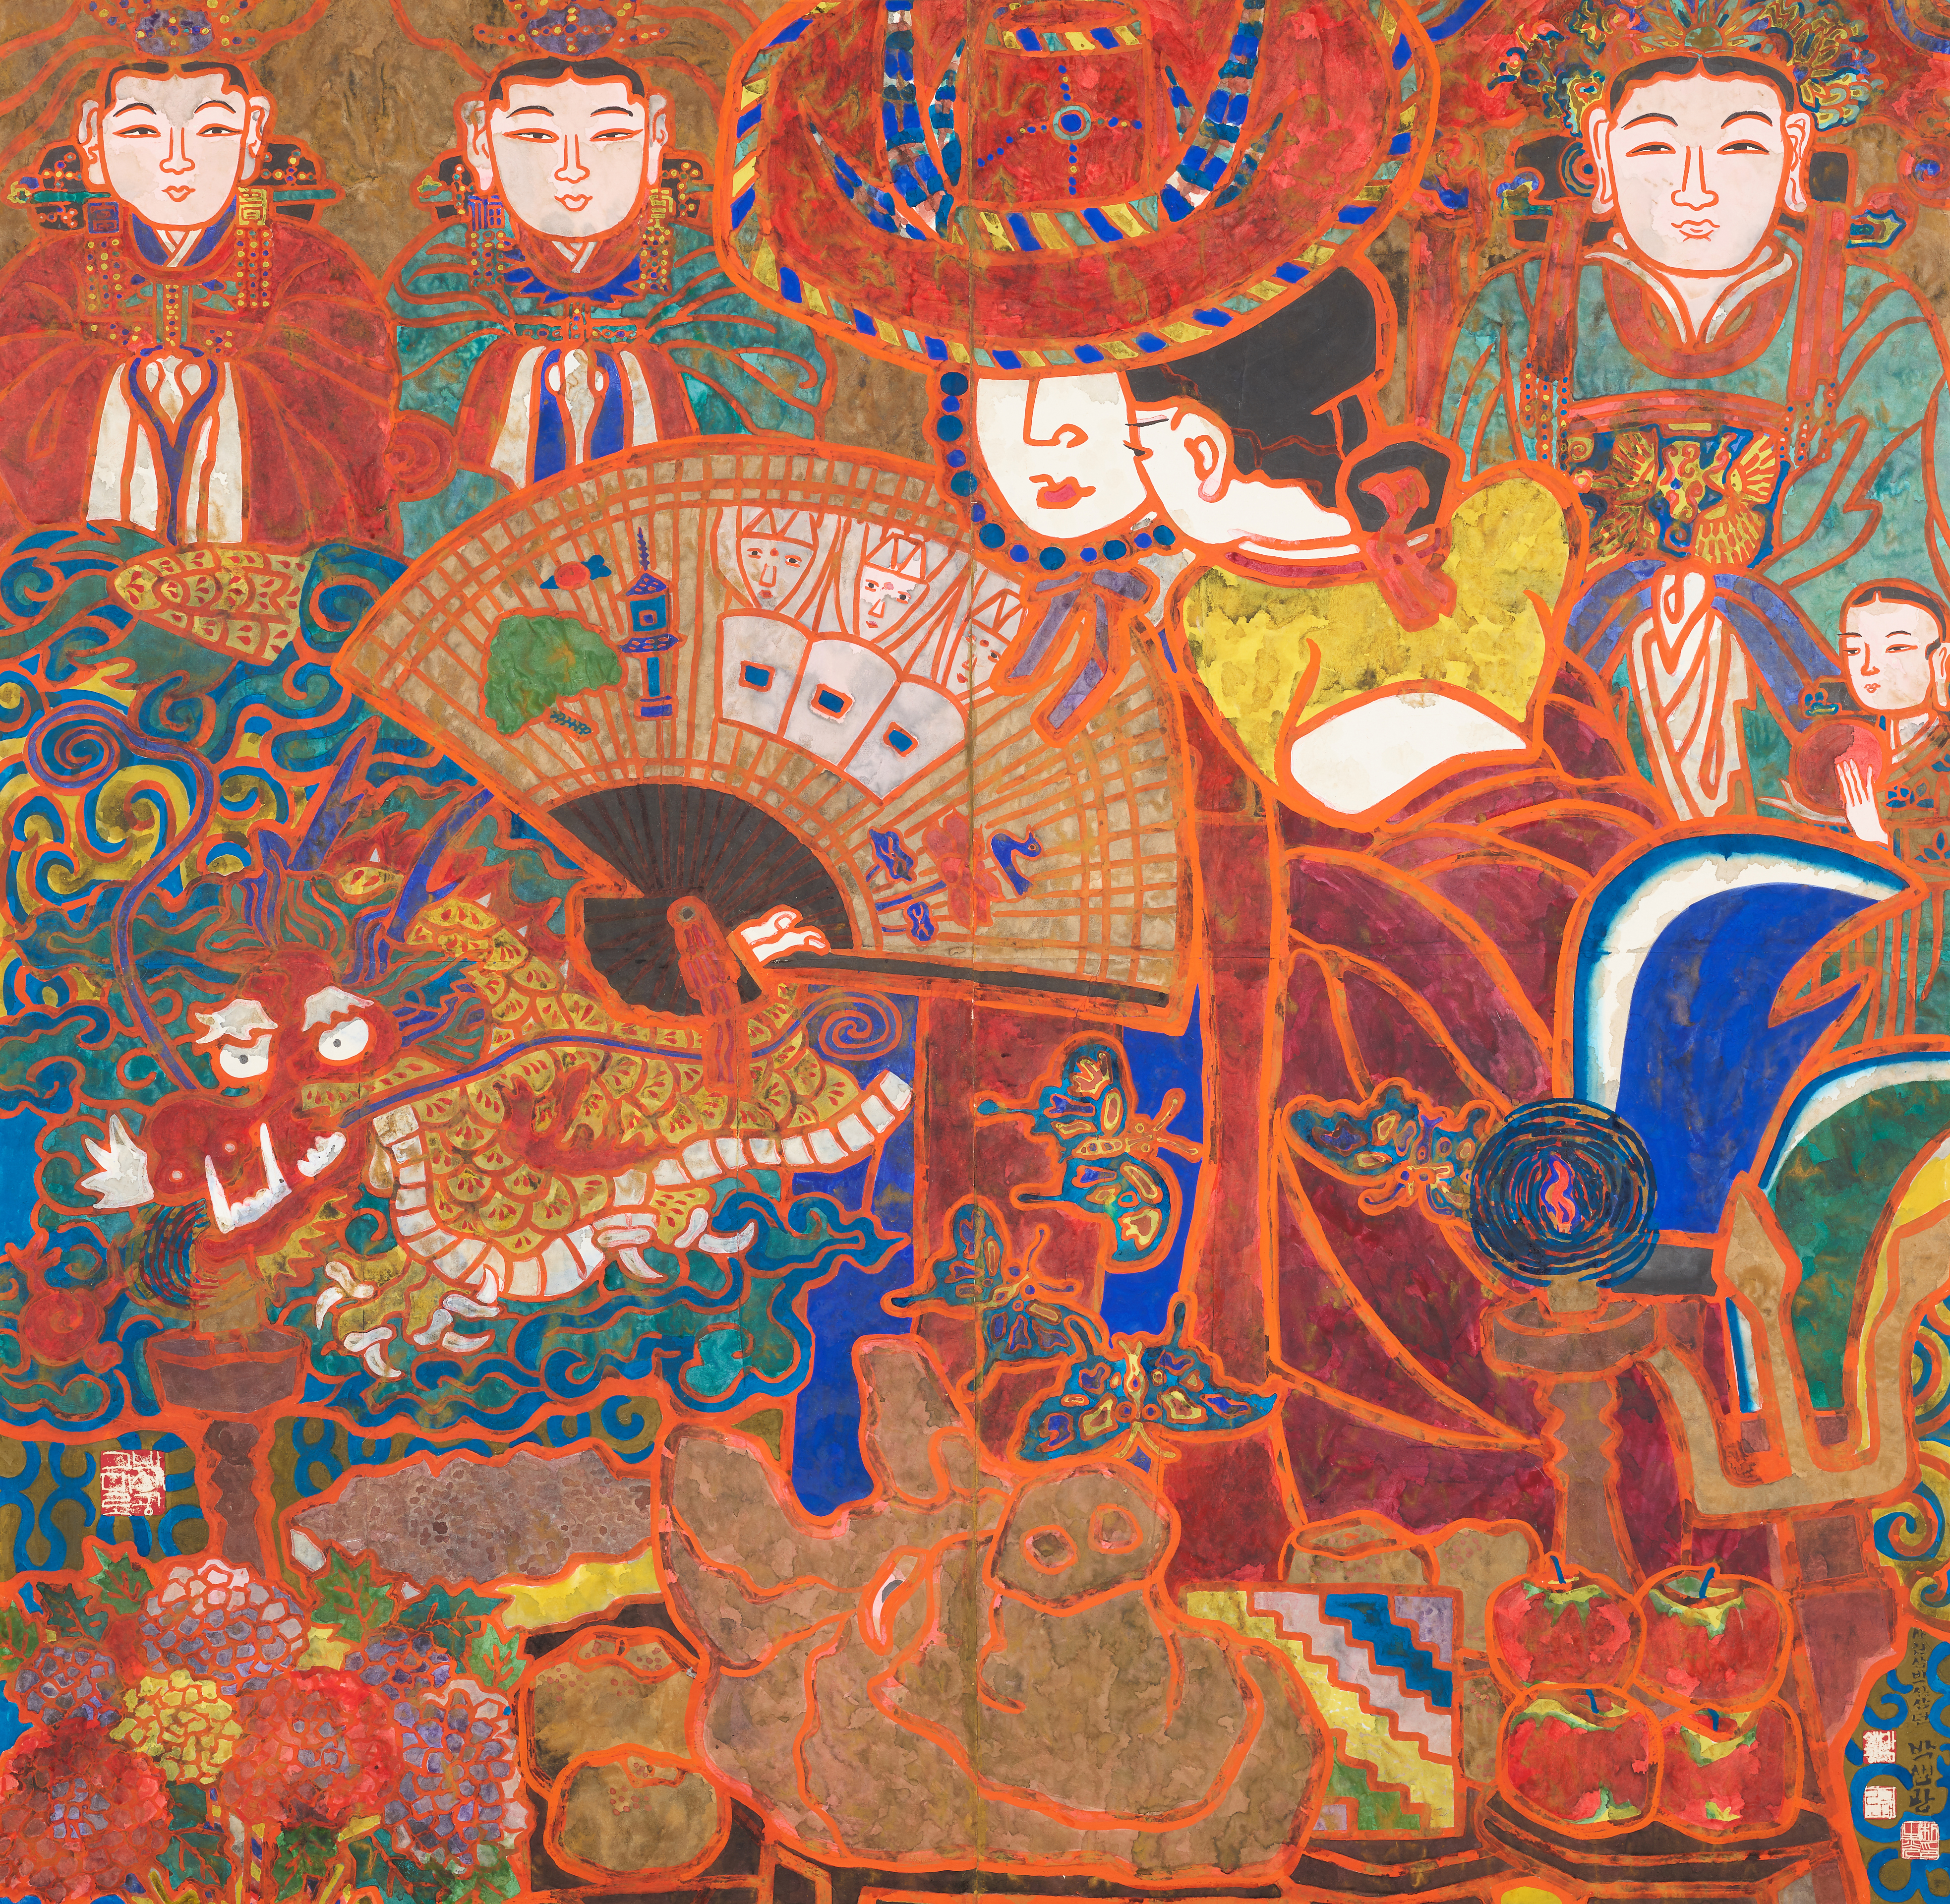 박생광(1904-1985), 무녀, 1980, 종이에 채색, 136x140cm.